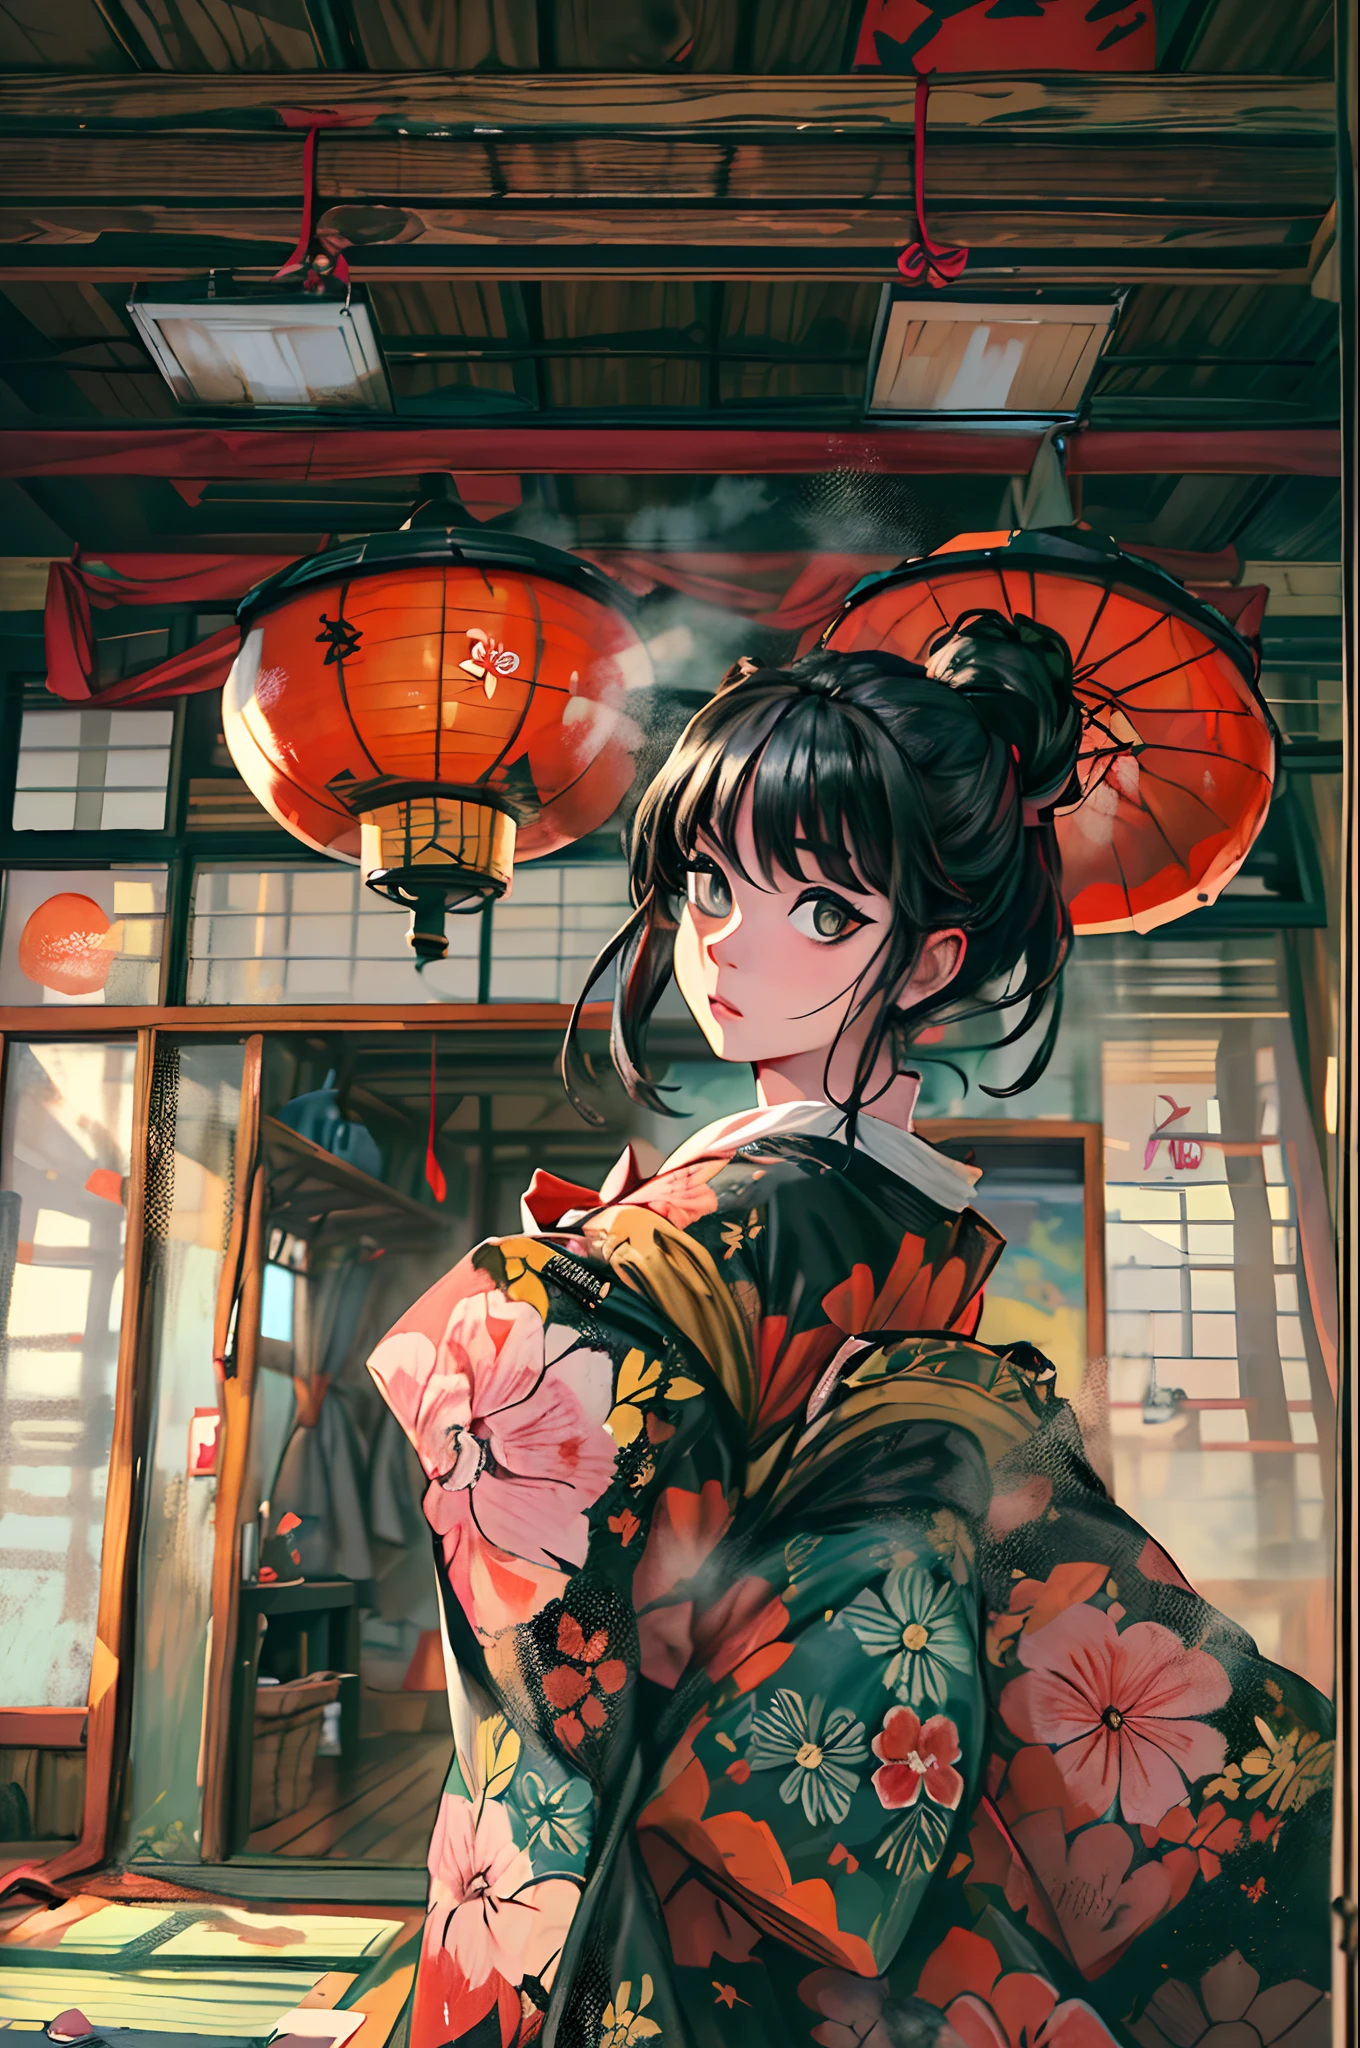 "(Потрясающий шедевр с безупречным качеством:1.5), Снято с видом спереди, с яркими и насыщенными цветами, Умопомрачительно красивая девушка с черными волосами и изысканно детализированным лицом, Взгляд снизу вверх, одетый в традиционное кимоно, Действие происходит в живописной красоте Японии, В окружении аутентичной атмосферы татами, с открытым окном, обрамляющим сцену."